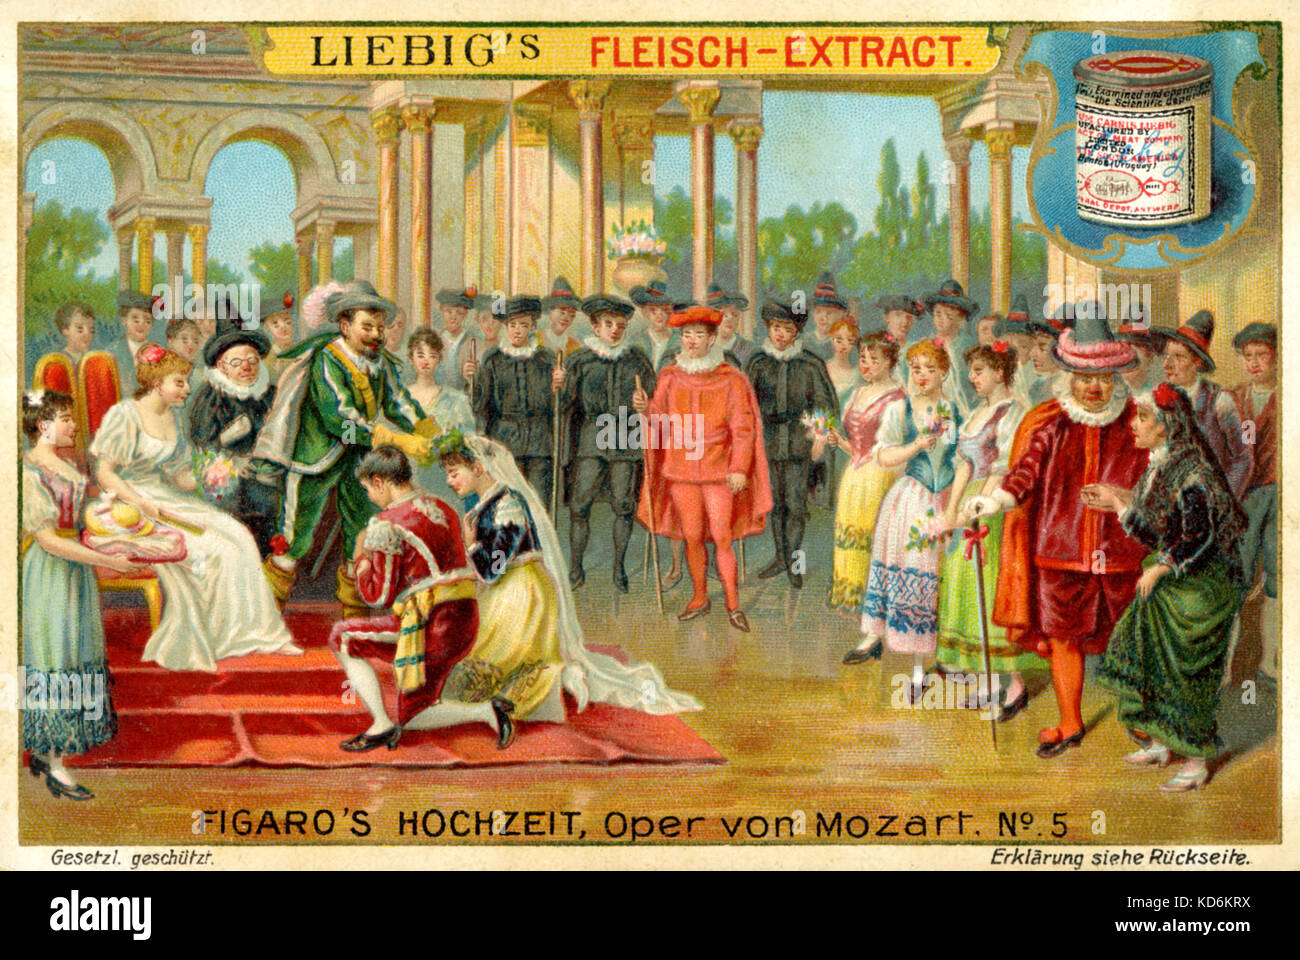 Wolfgang Amadeus Mozart opera las Bodas de Fígaro Bodas de Fígaro.  Ilustración de la Ley III - Figaro y Susanna's las celebraciones de boda,  con el Conde, la Condesa, y numeroso público.